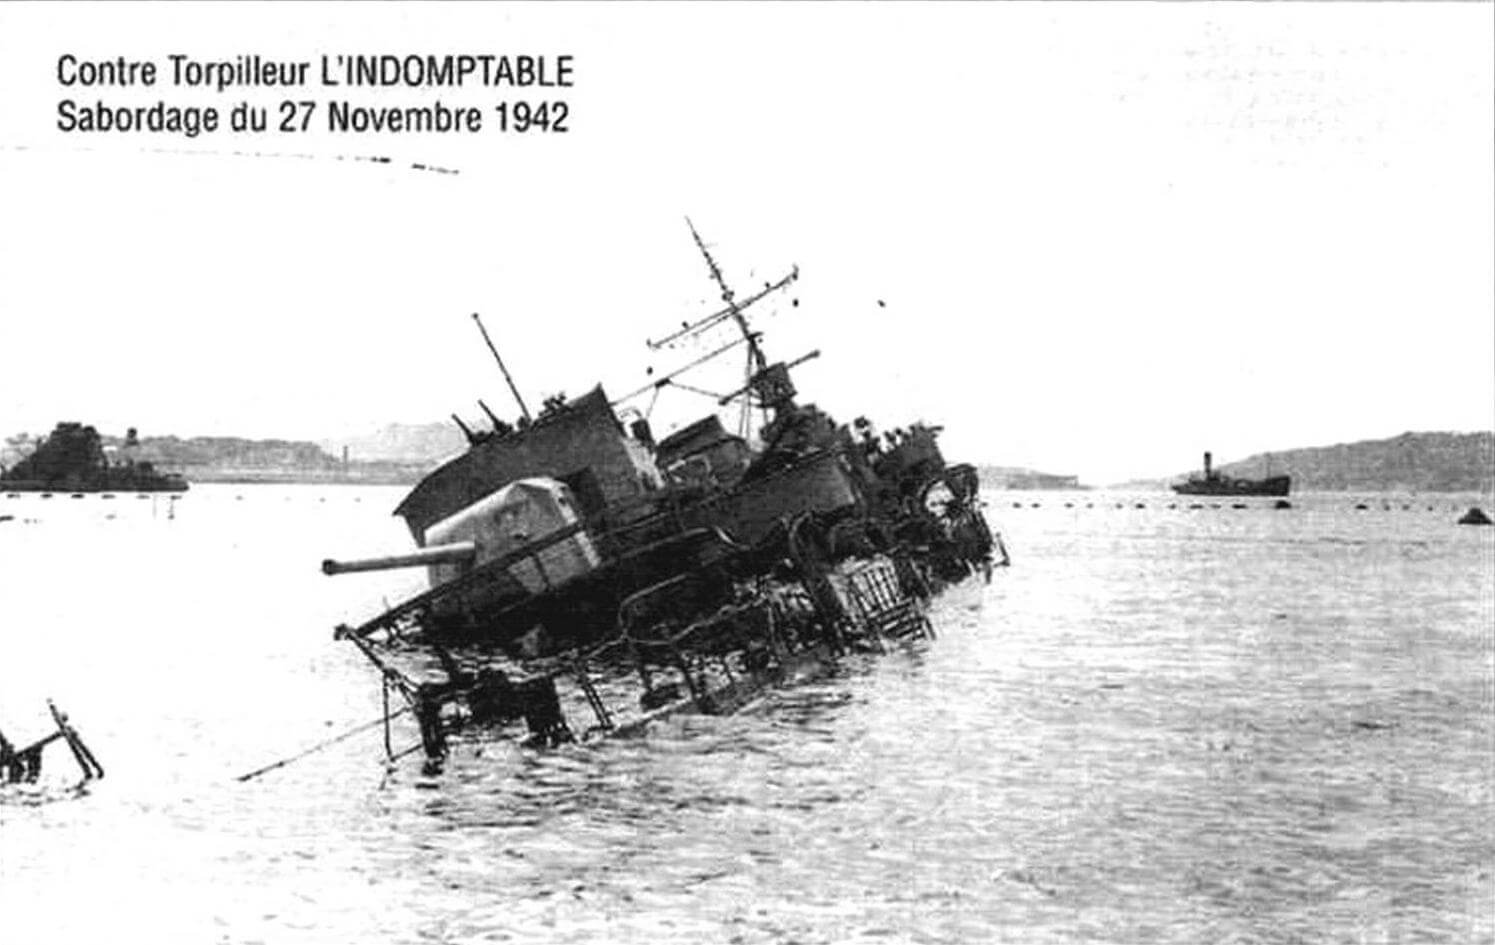 Лидер «Л’Эндомтабль», затопленный своим экипажем в Тулоне 27 ноября 1942 года. Впоследствии немцы подняли корабль и даже намеревались ввести его в состав своего флота, но безуспешно...